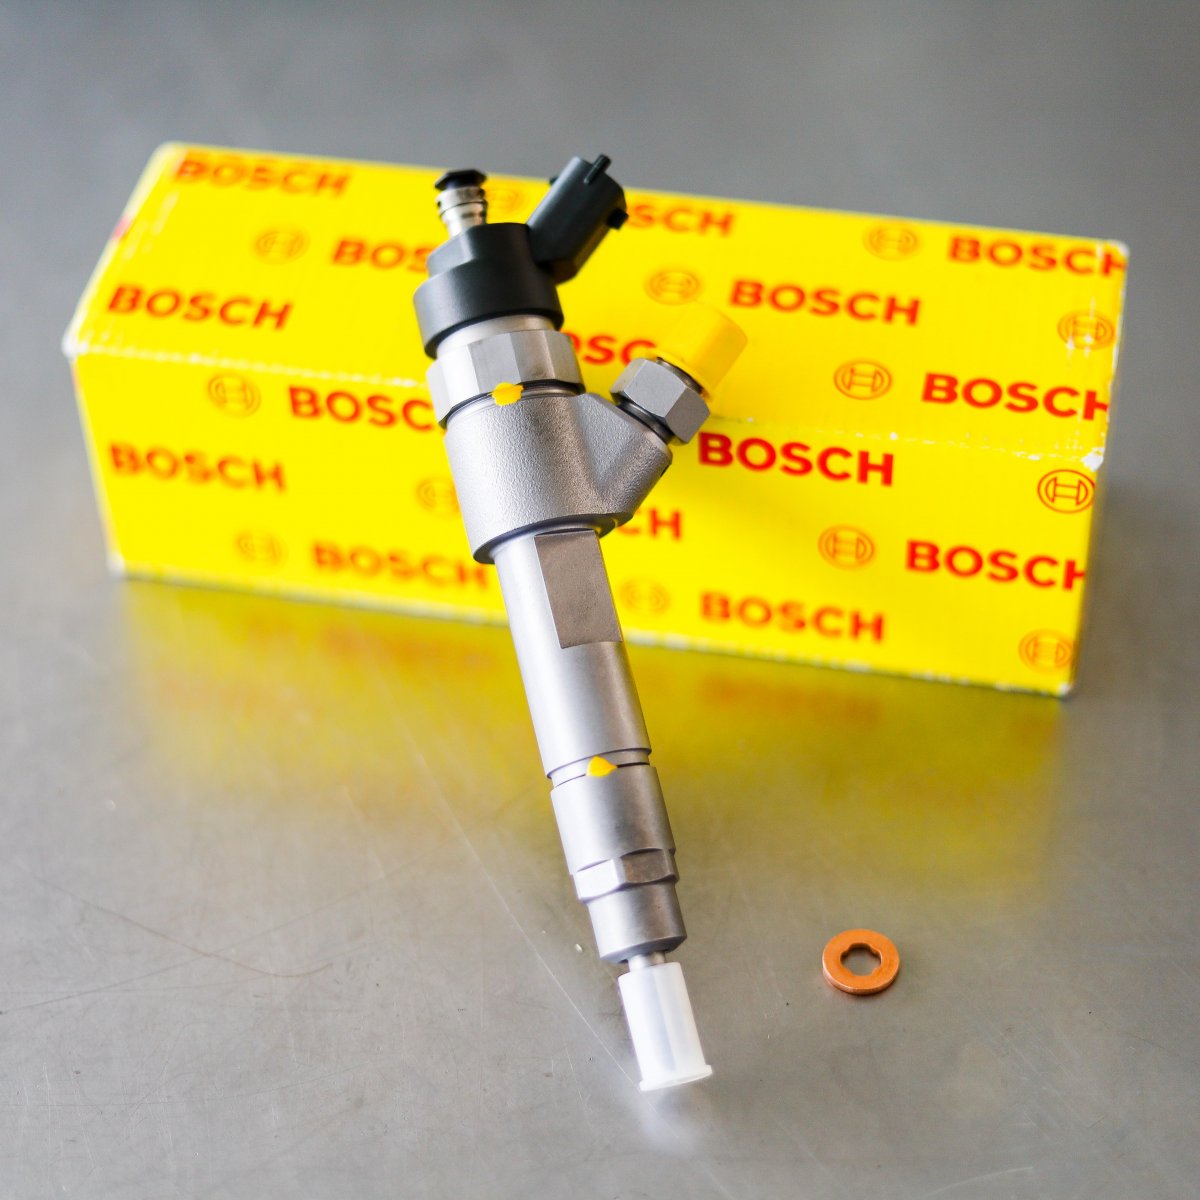 Wtryskiwacz Bosch naprawiony gotowy do wysyłki do kupującego z gwarancją na 2 lata w atrakcyjnej cenie